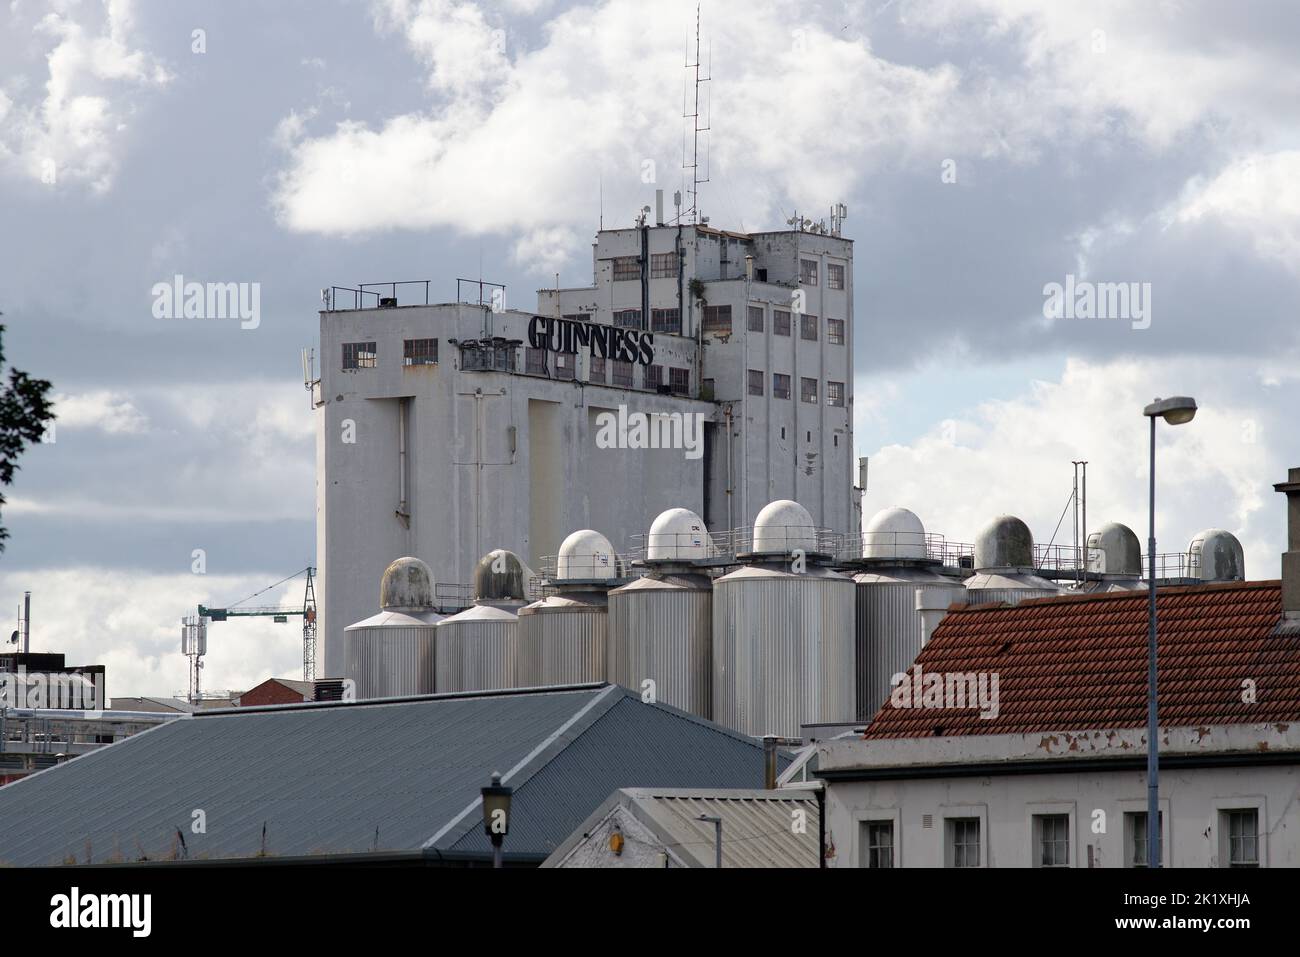 La fabbrica di birra Guinness a Dublino, Irlanda. Una famosa destinazione aperta 7 giorni su 7. Una tipica birra nera prodotta nella repubblica d'Irlanda. Foto Stock